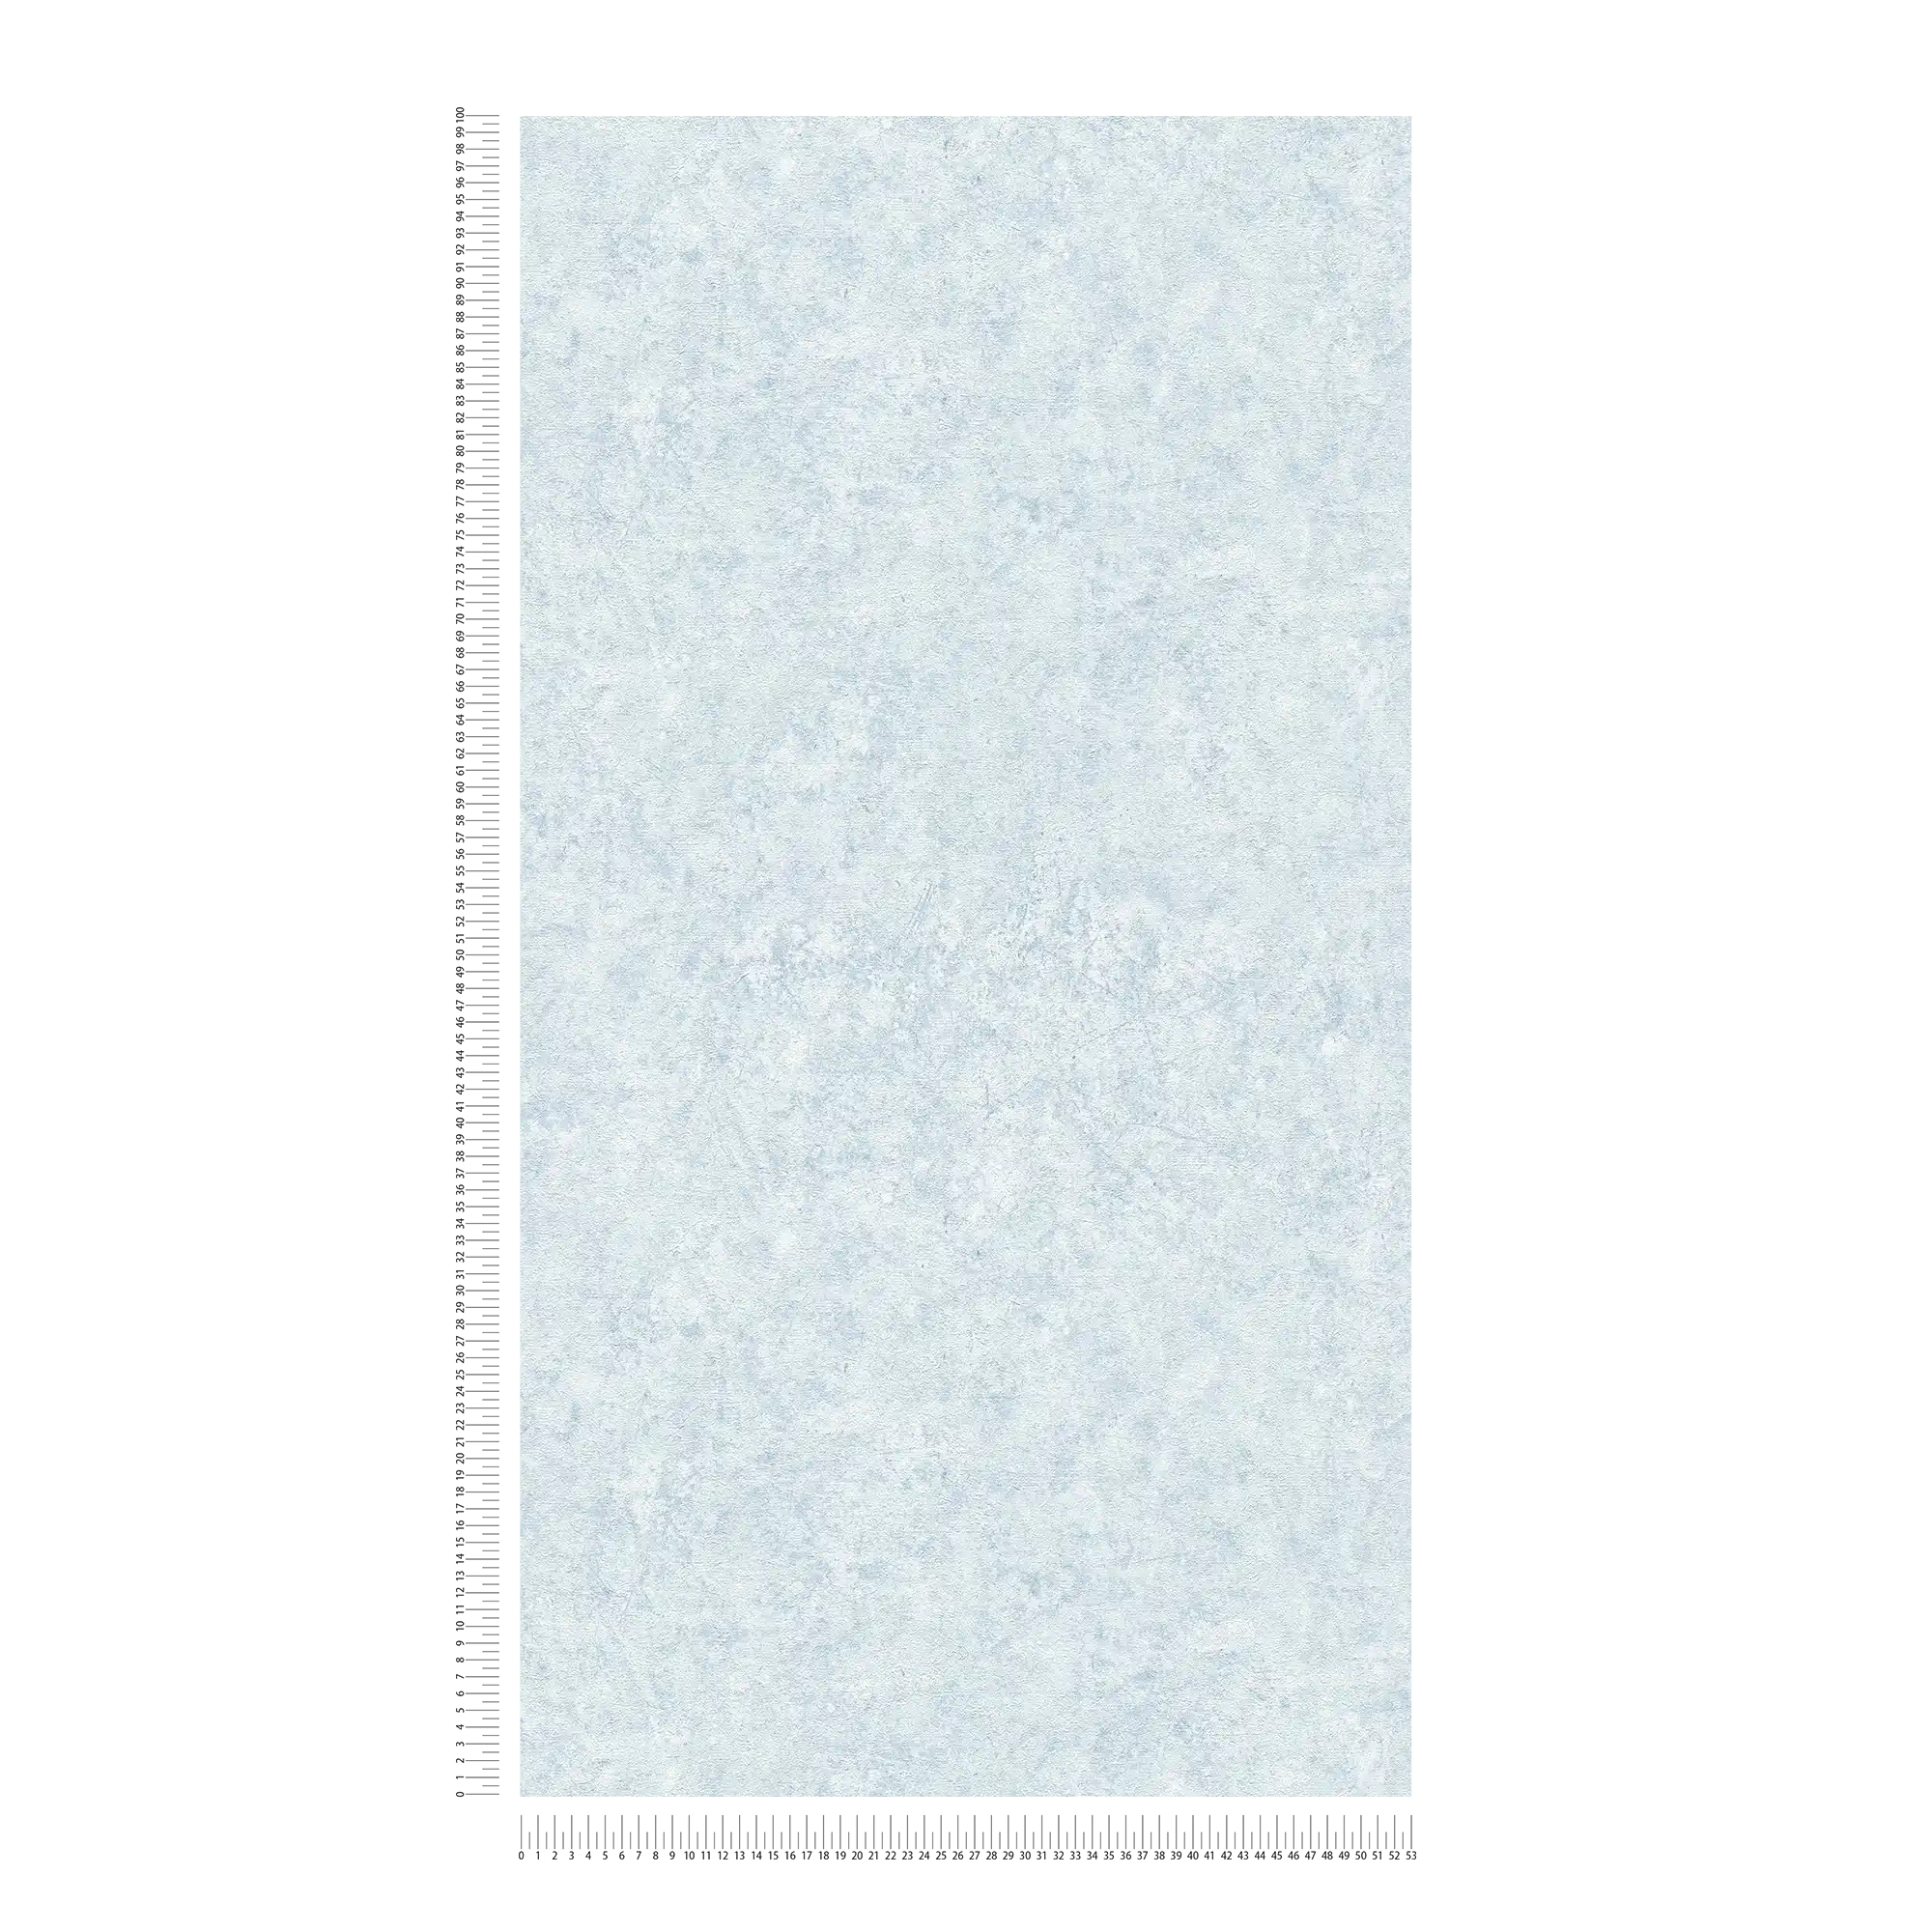             Einfarbige Tapete mit Strukturtapete in dezenter Farbe – Blau, Weiß
        